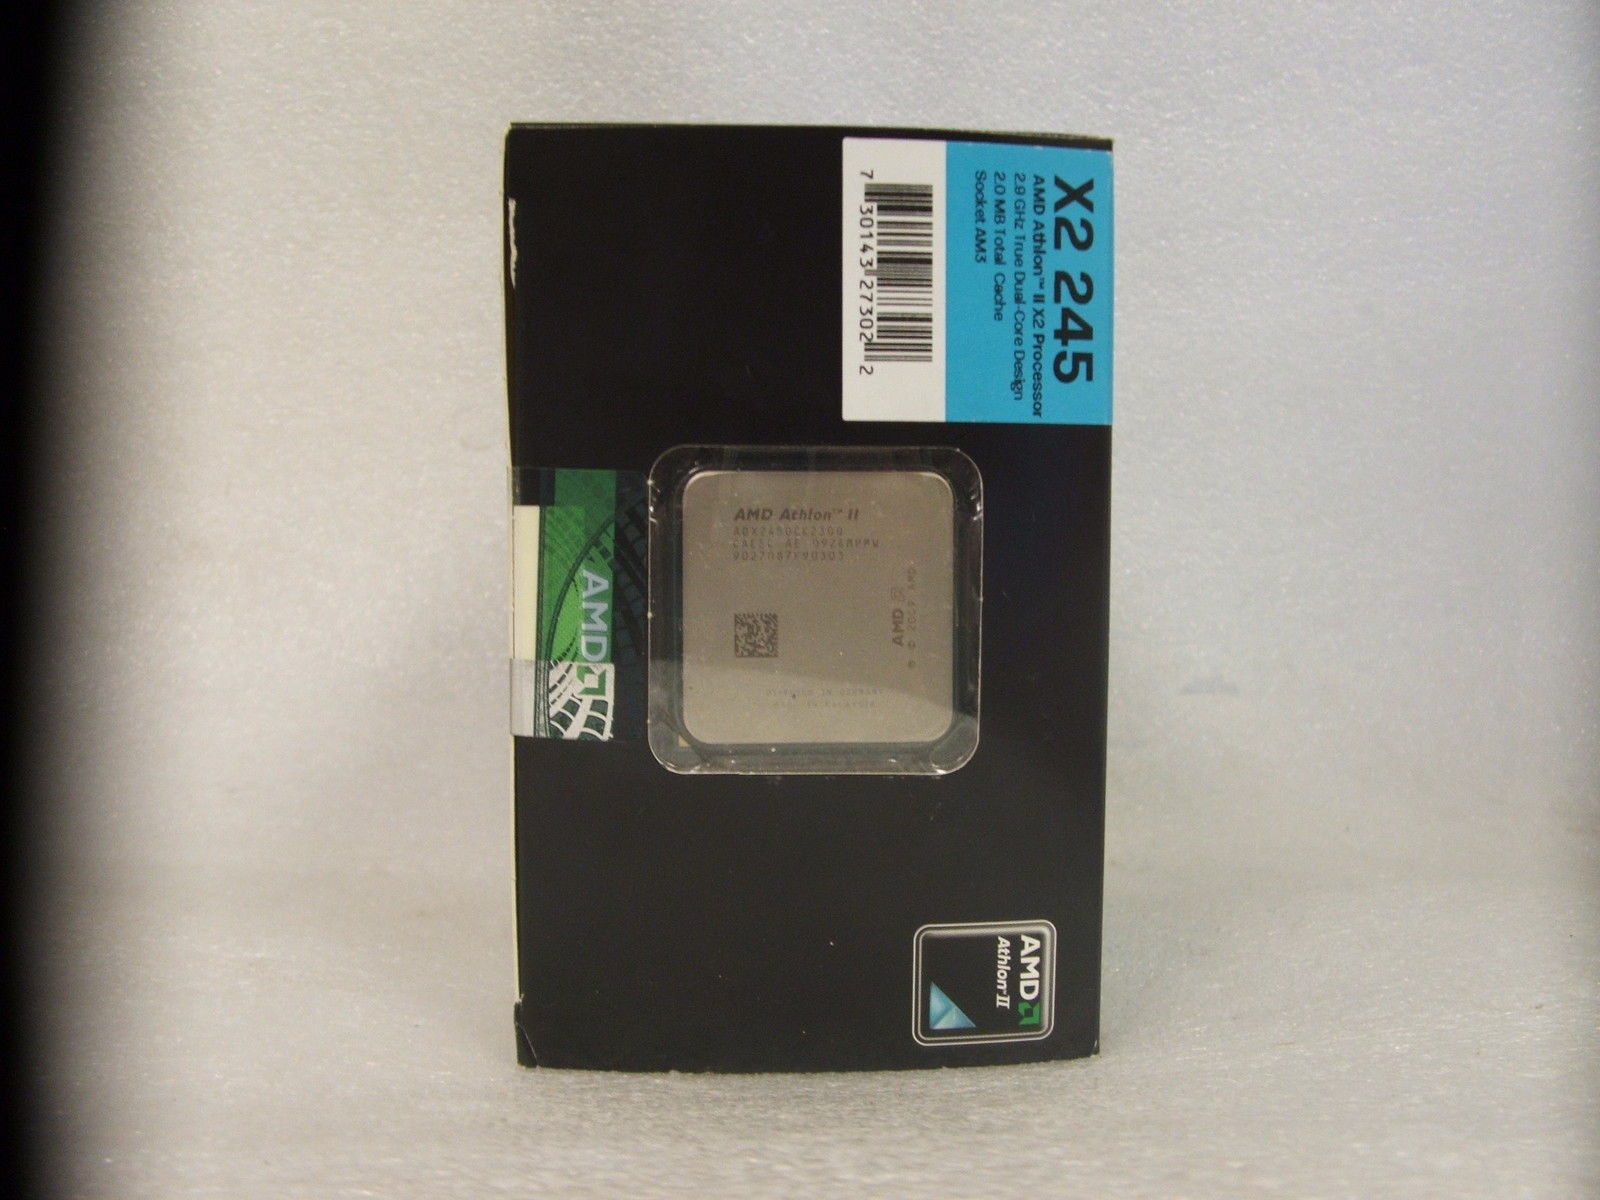 Amd athlon x2 сокет. AMD Athlon(TM) II x2 245 Processor 2.90 GHZ. AMD Athlon 64 x2 2.9 ГГЦ. Процессор AMD Athlon TM ll x2 250 Processor 2.80 GHZ. Процессор CPU x2 AMD Athlon 2 x2 245.